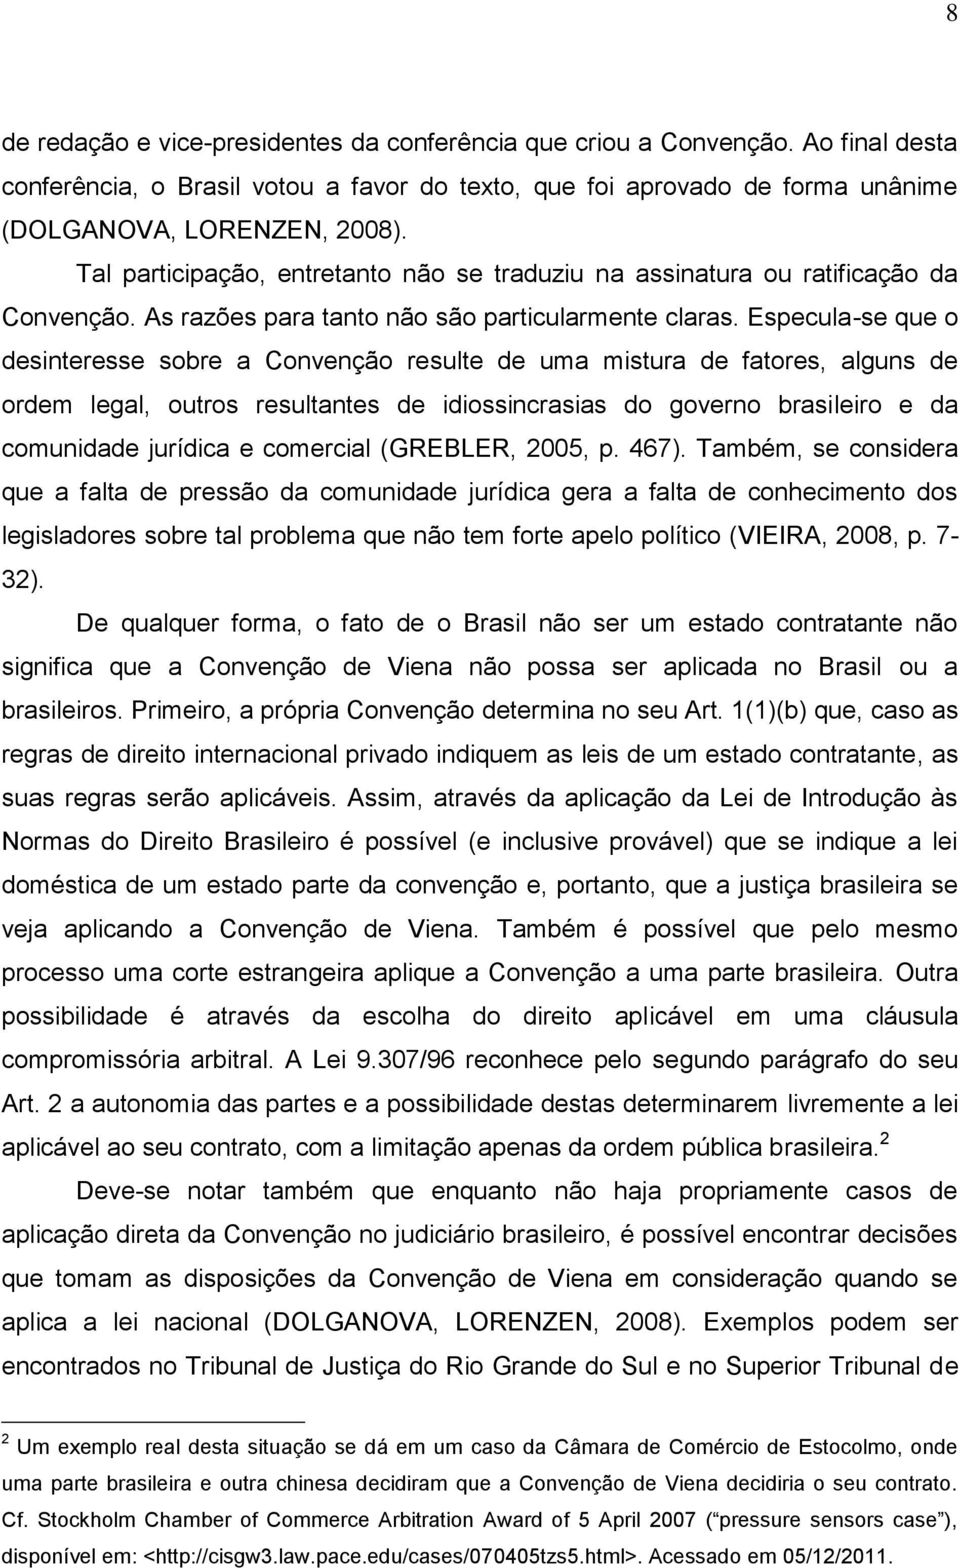 Especula-se que o desinteresse sobre a Convenção resulte de uma mistura de fatores, alguns de ordem legal, outros resultantes de idiossincrasias do governo brasileiro e da comunidade jurídica e